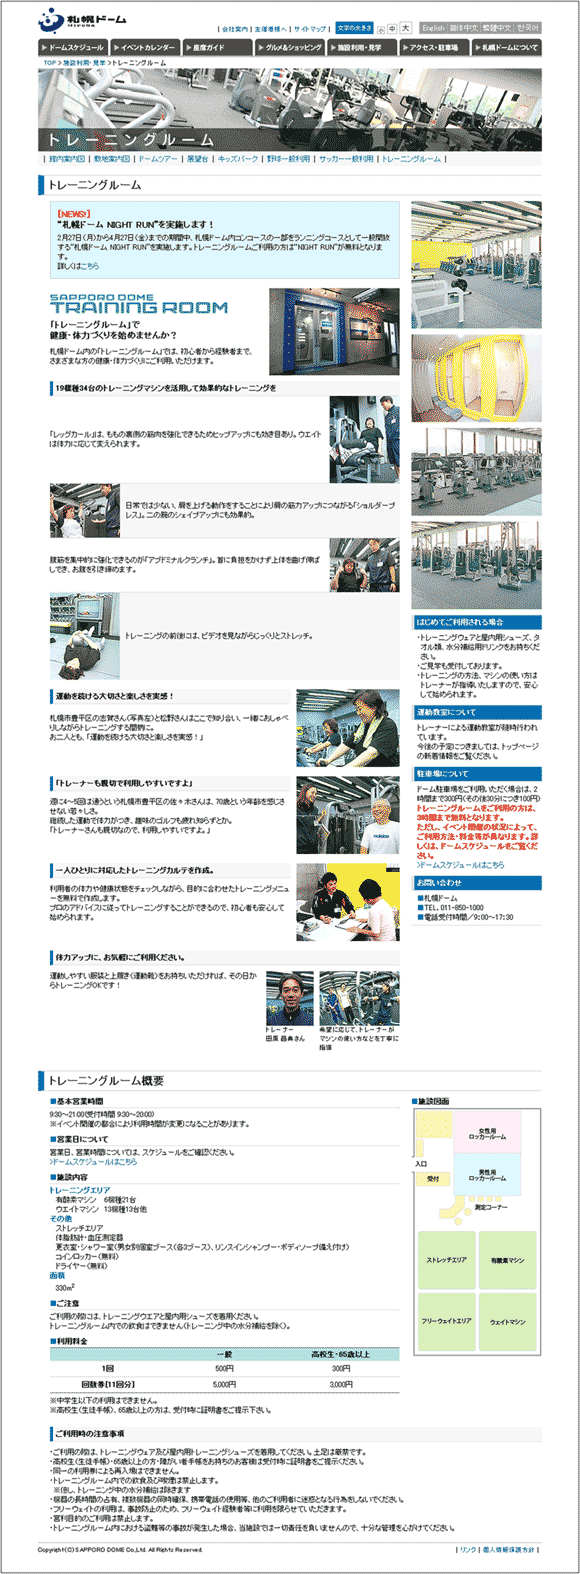 図20：「札幌ドーム」の「トレーニングルーム」のページ